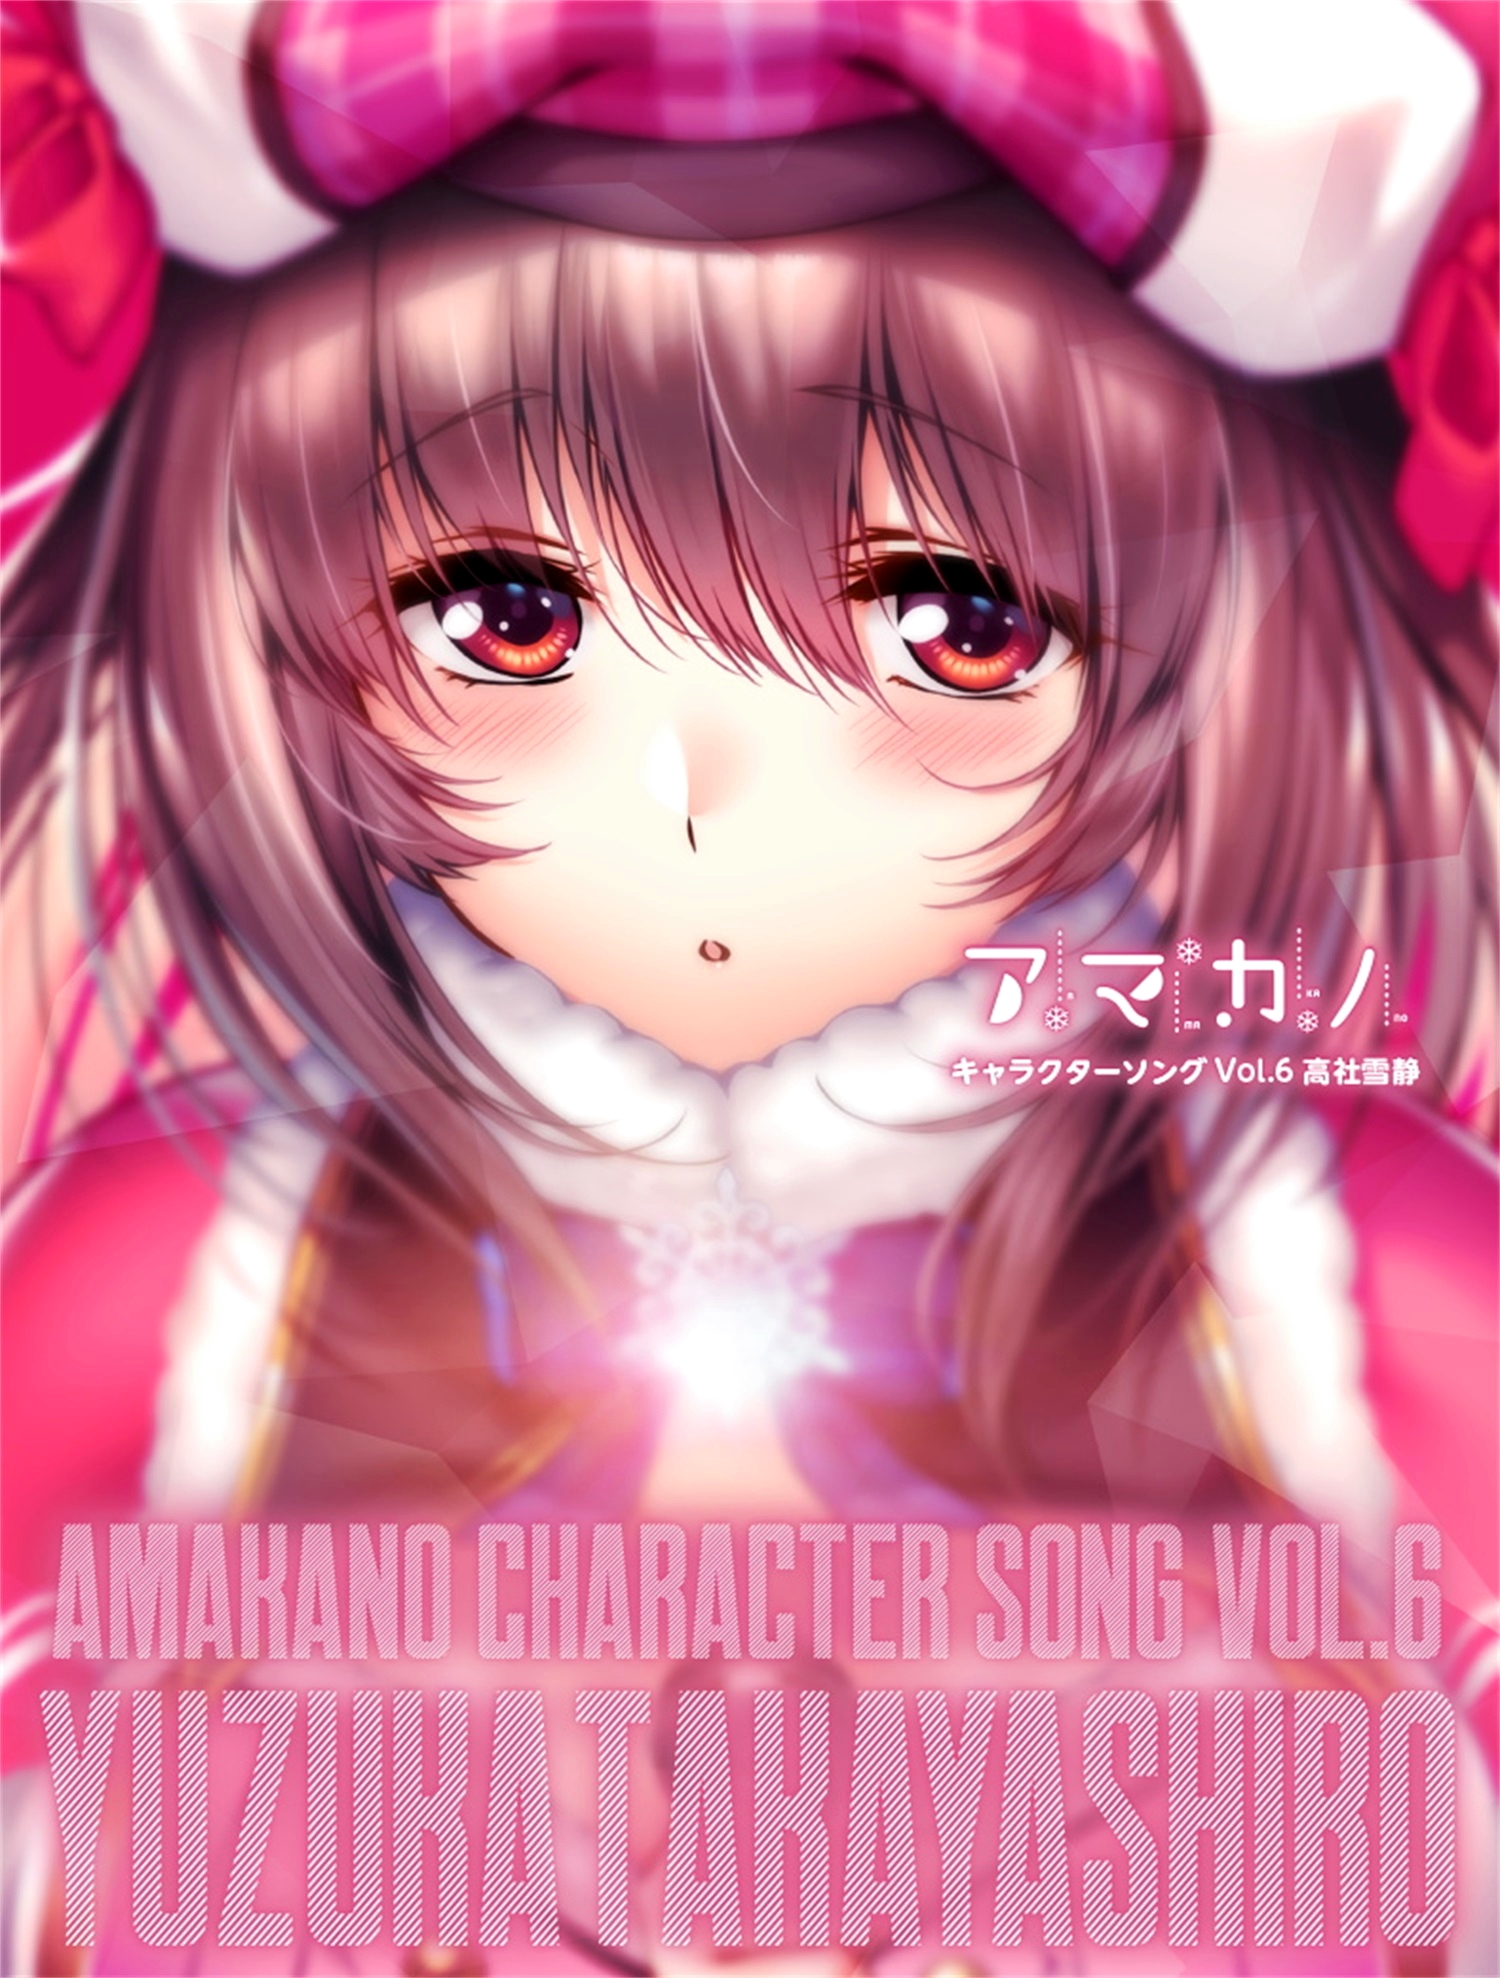 【WAV】ゲーム「アマカノ」Character Song Vol.6「高社雪静」／あざらしそふと